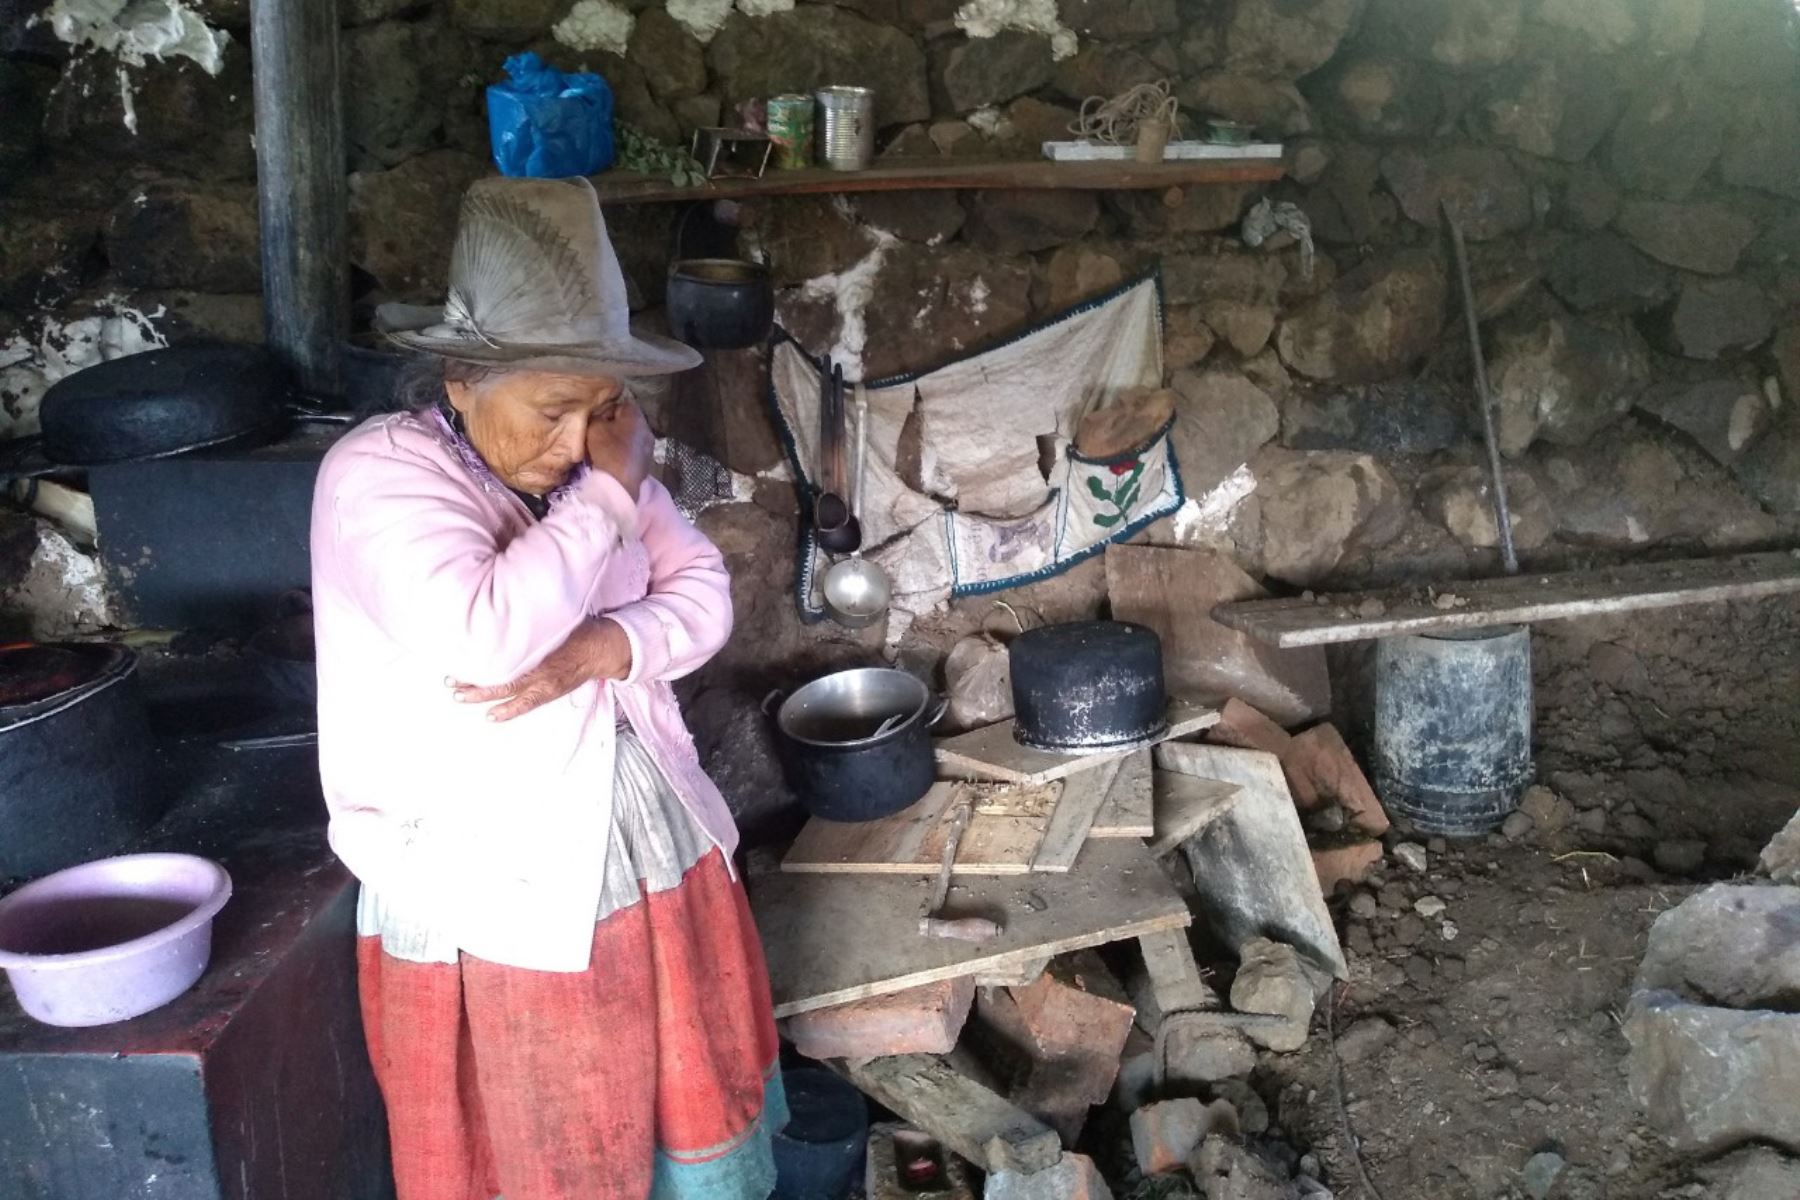 La pared de una vivienda precaria del centro poblado de Tarapampa (Áncash) colapsó producto de las lluvias intensas.